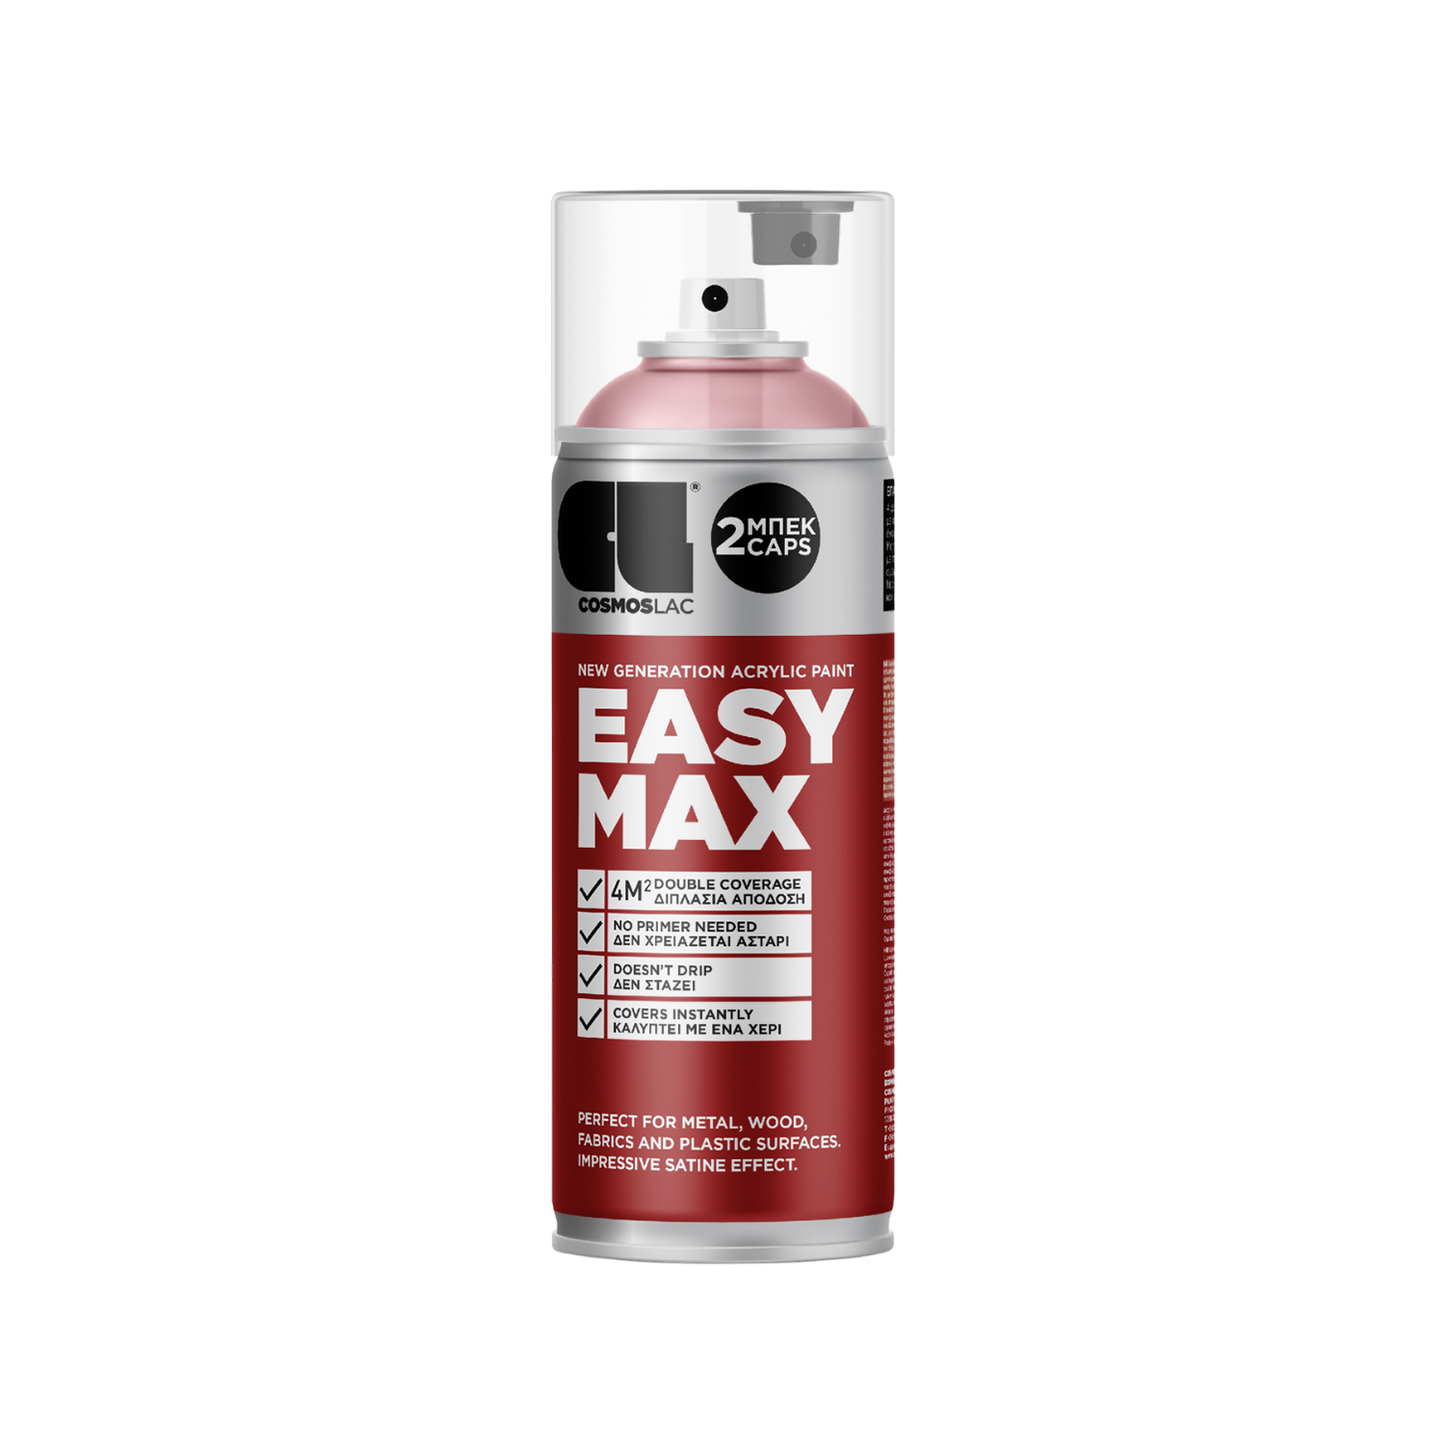 COSMOS LAC EASY MAX Premium Acryllack Sprühlack zum Upcycling und DIY Projekten von Möbeln und Dekoobjekten rot silberne Sprühflasche Inhalt ist pastell-rosa Acrylfarbe